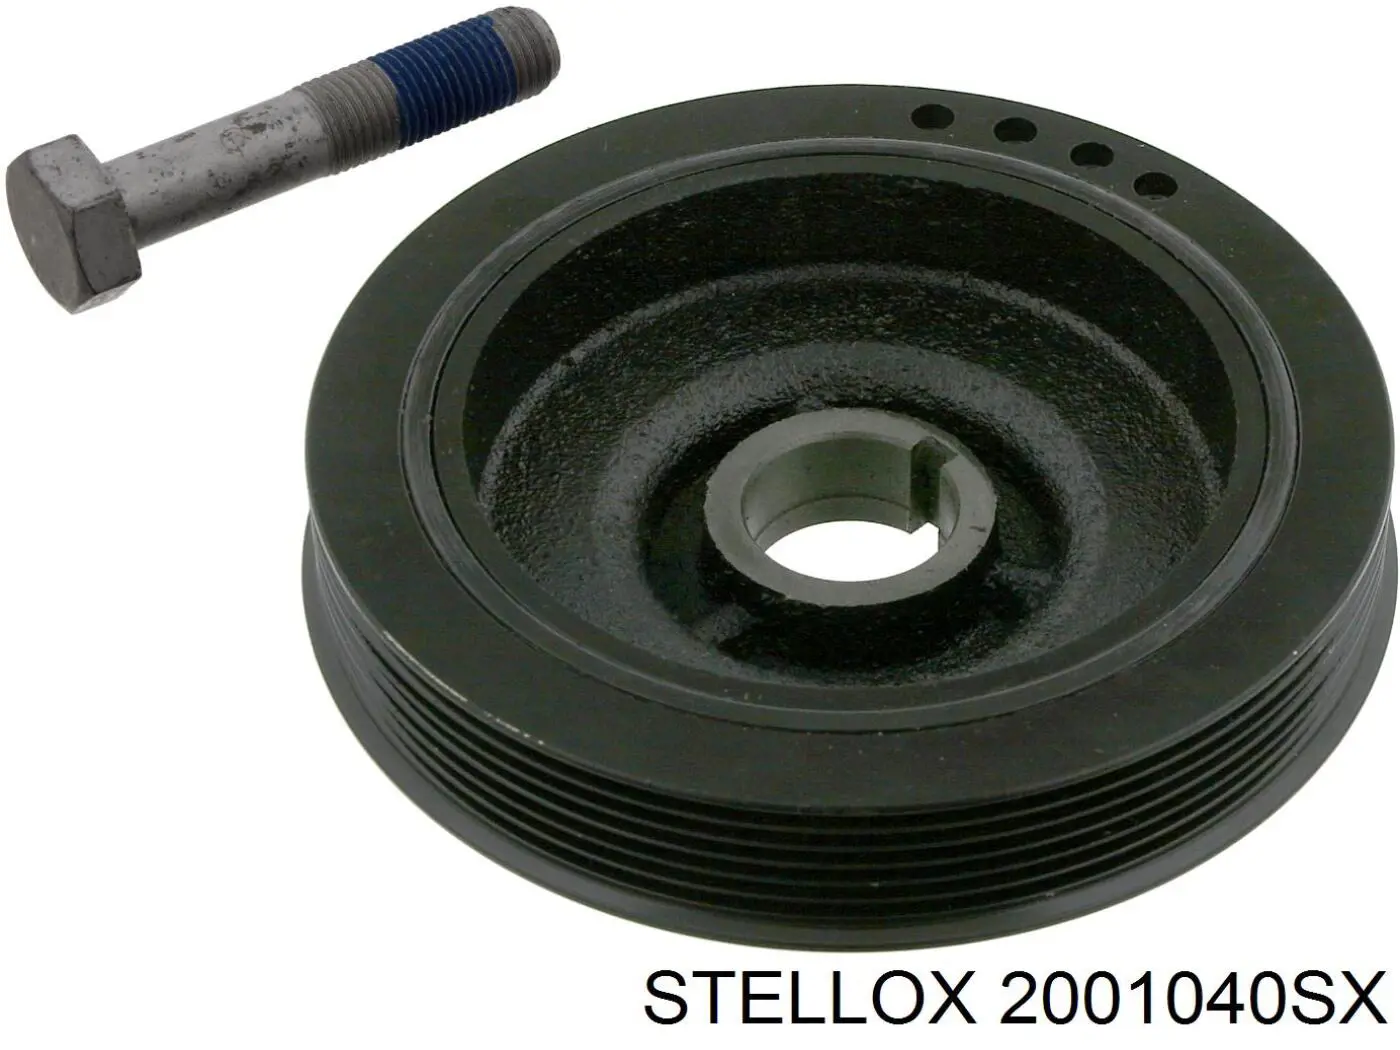 2001040SX Stellox polea de cigüeñal